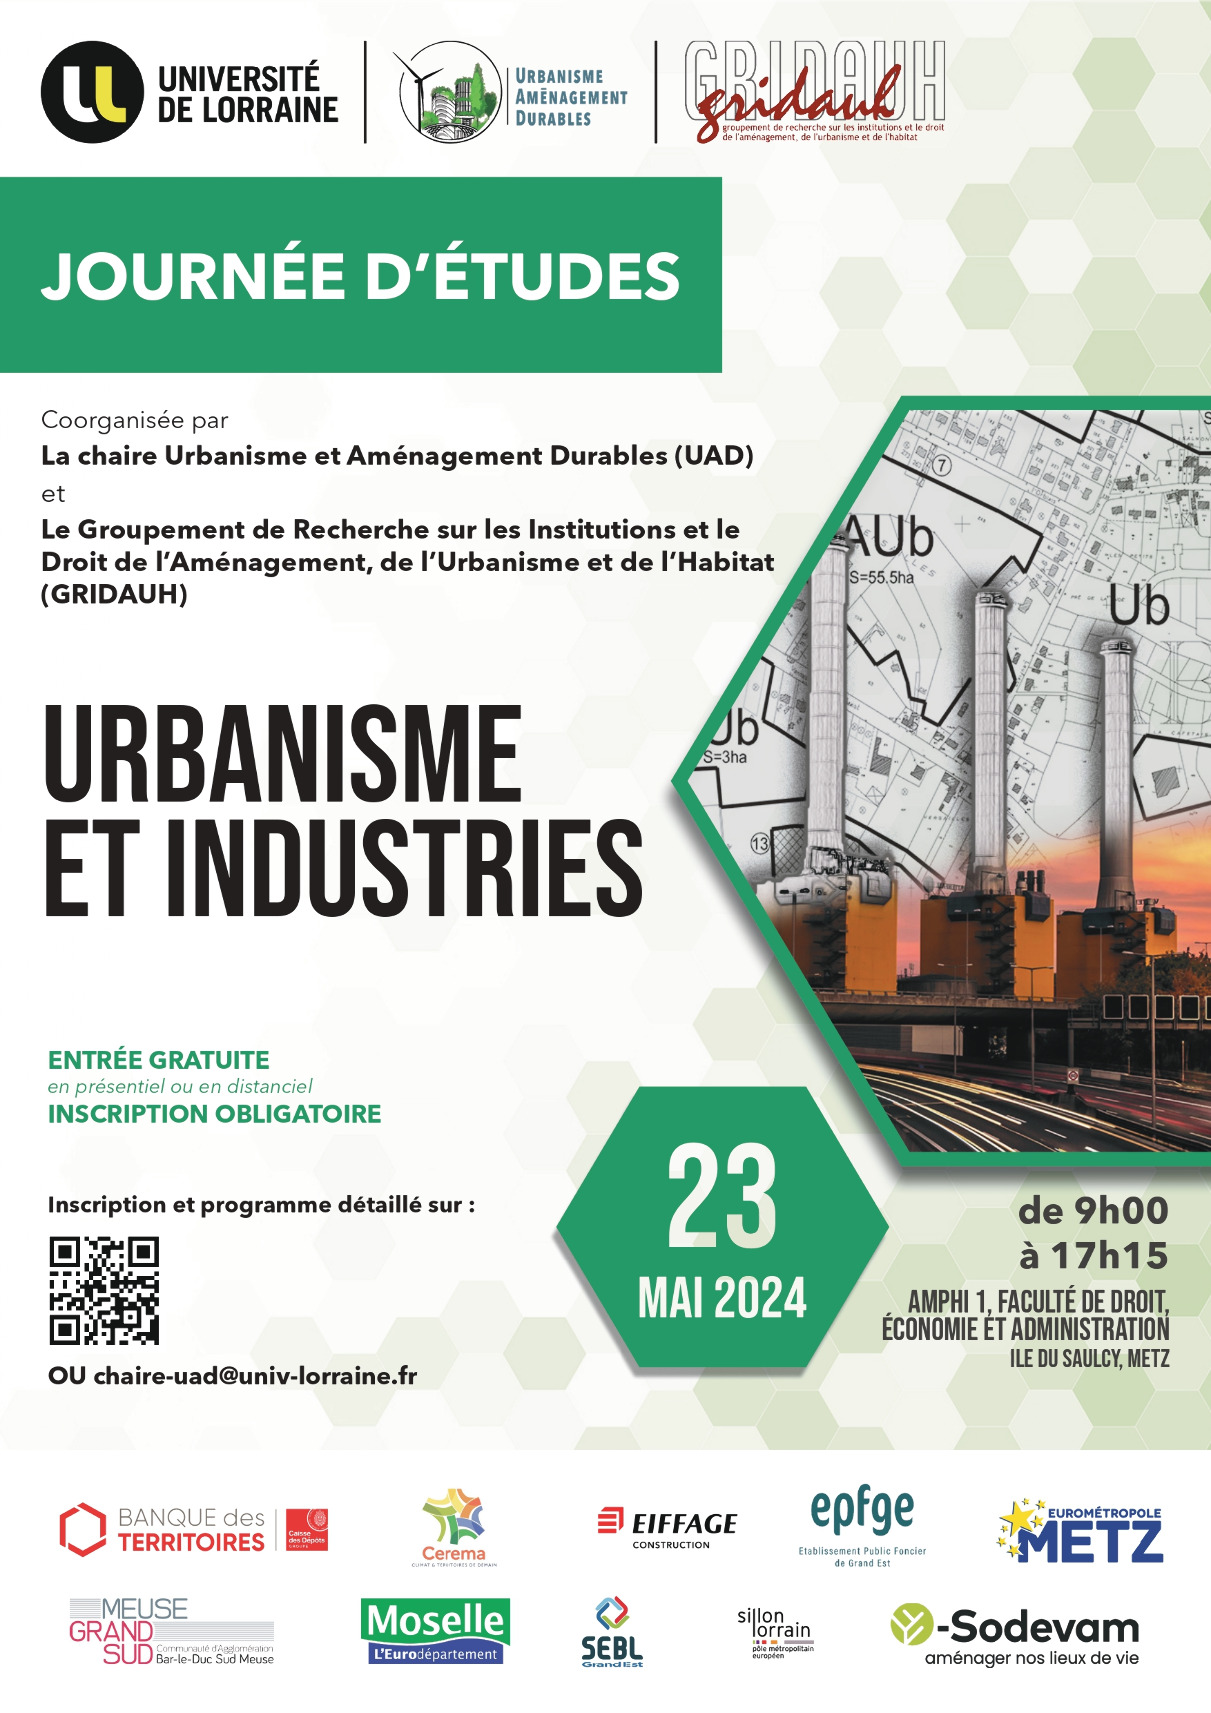 Journée d'études "Urbanisme et industries"